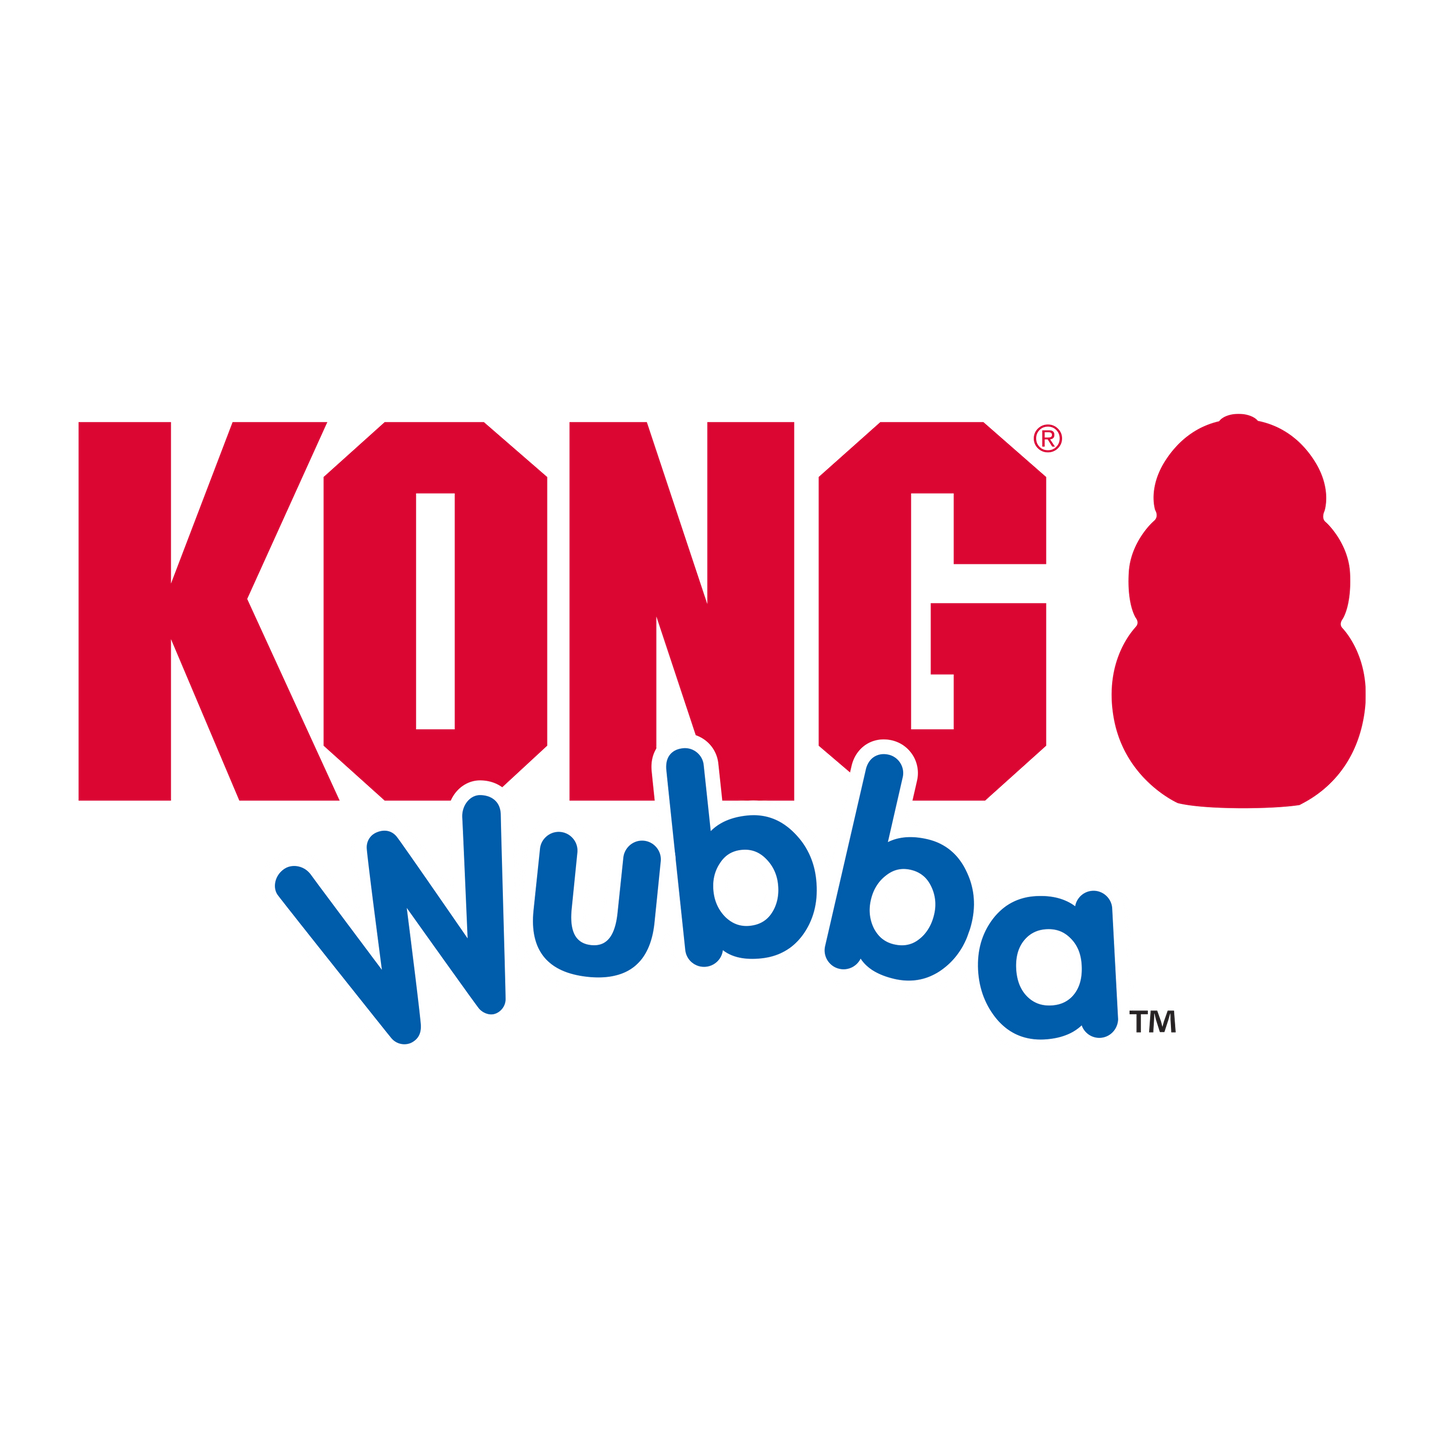 KONG WUBBA